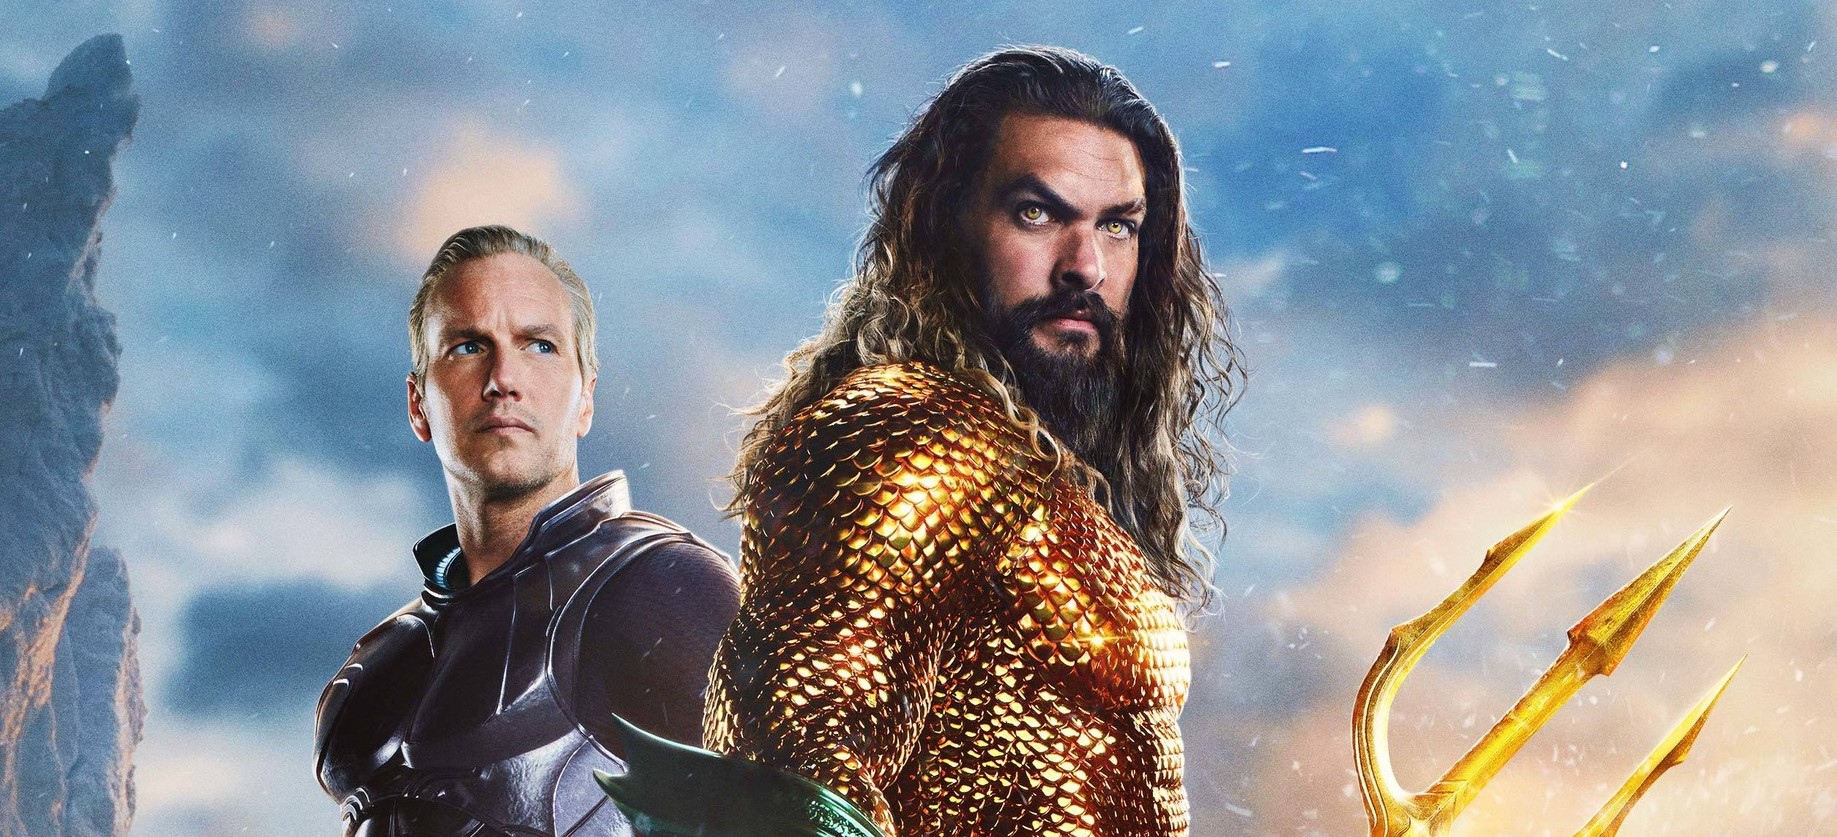 Dwóch mężczyzn w kostiumach superbohaterów, jeden z trójzębem, na tle dramatycznie oświetlonego nieba. Kadr z plakatu do filmu Aquaman i Zaginione Królestwo